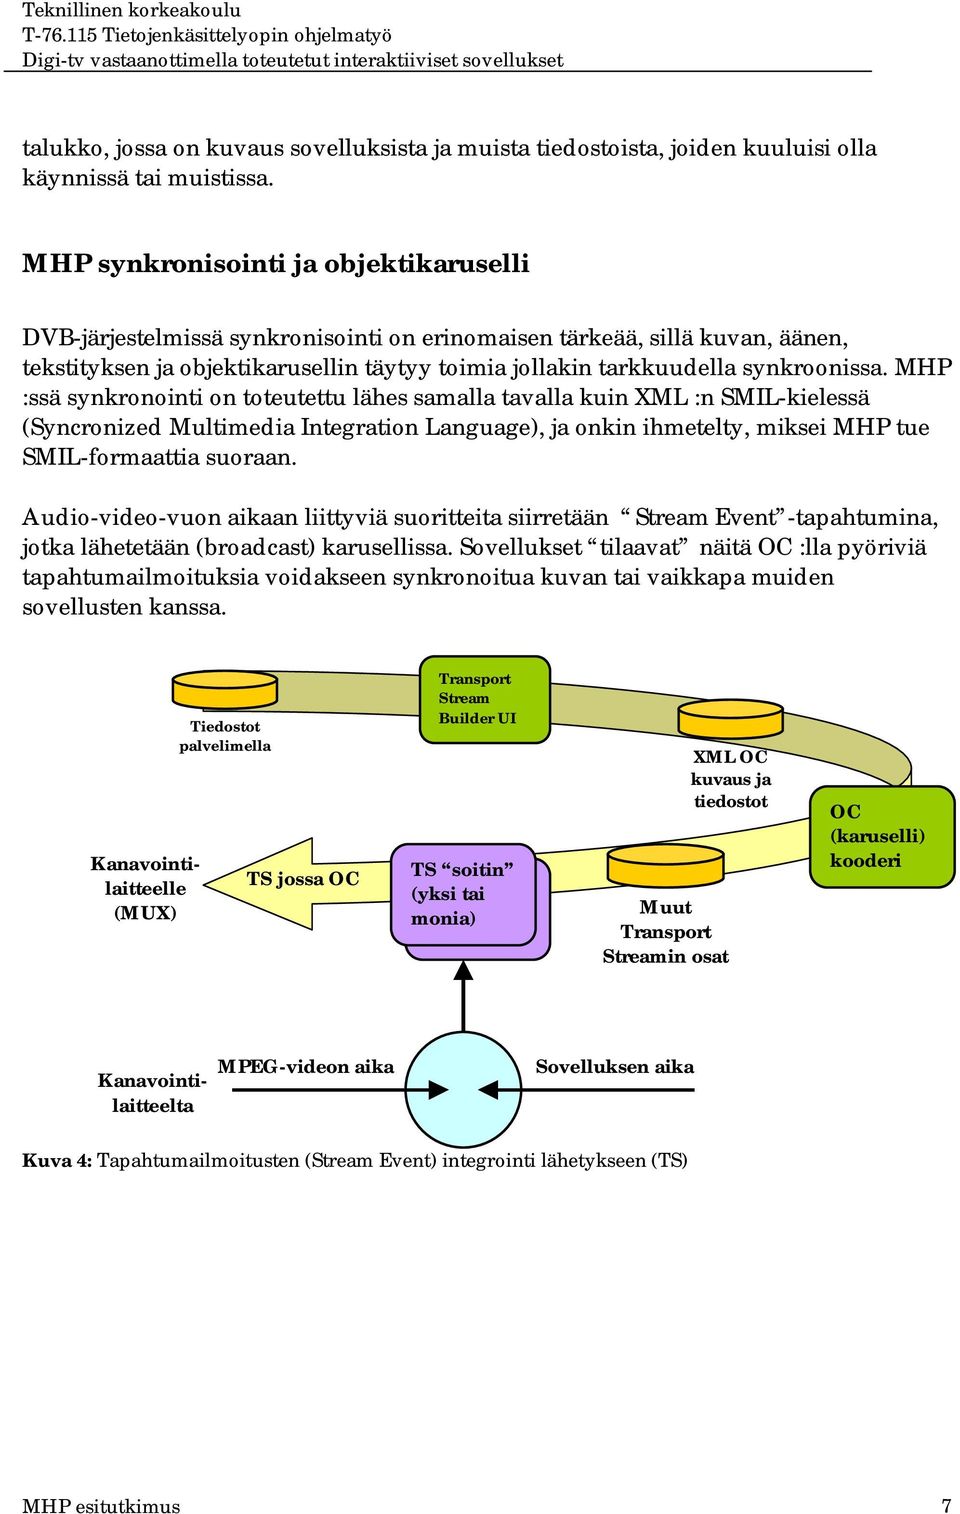 MHP :ssä synkronointi on toteutettu lähes samalla tavalla kuin XML :n SMIL-kielessä (Syncronized Multimedia Integration Language), ja onkin ihmetelty, miksei MHP tue SMIL-formaattia suoraan.